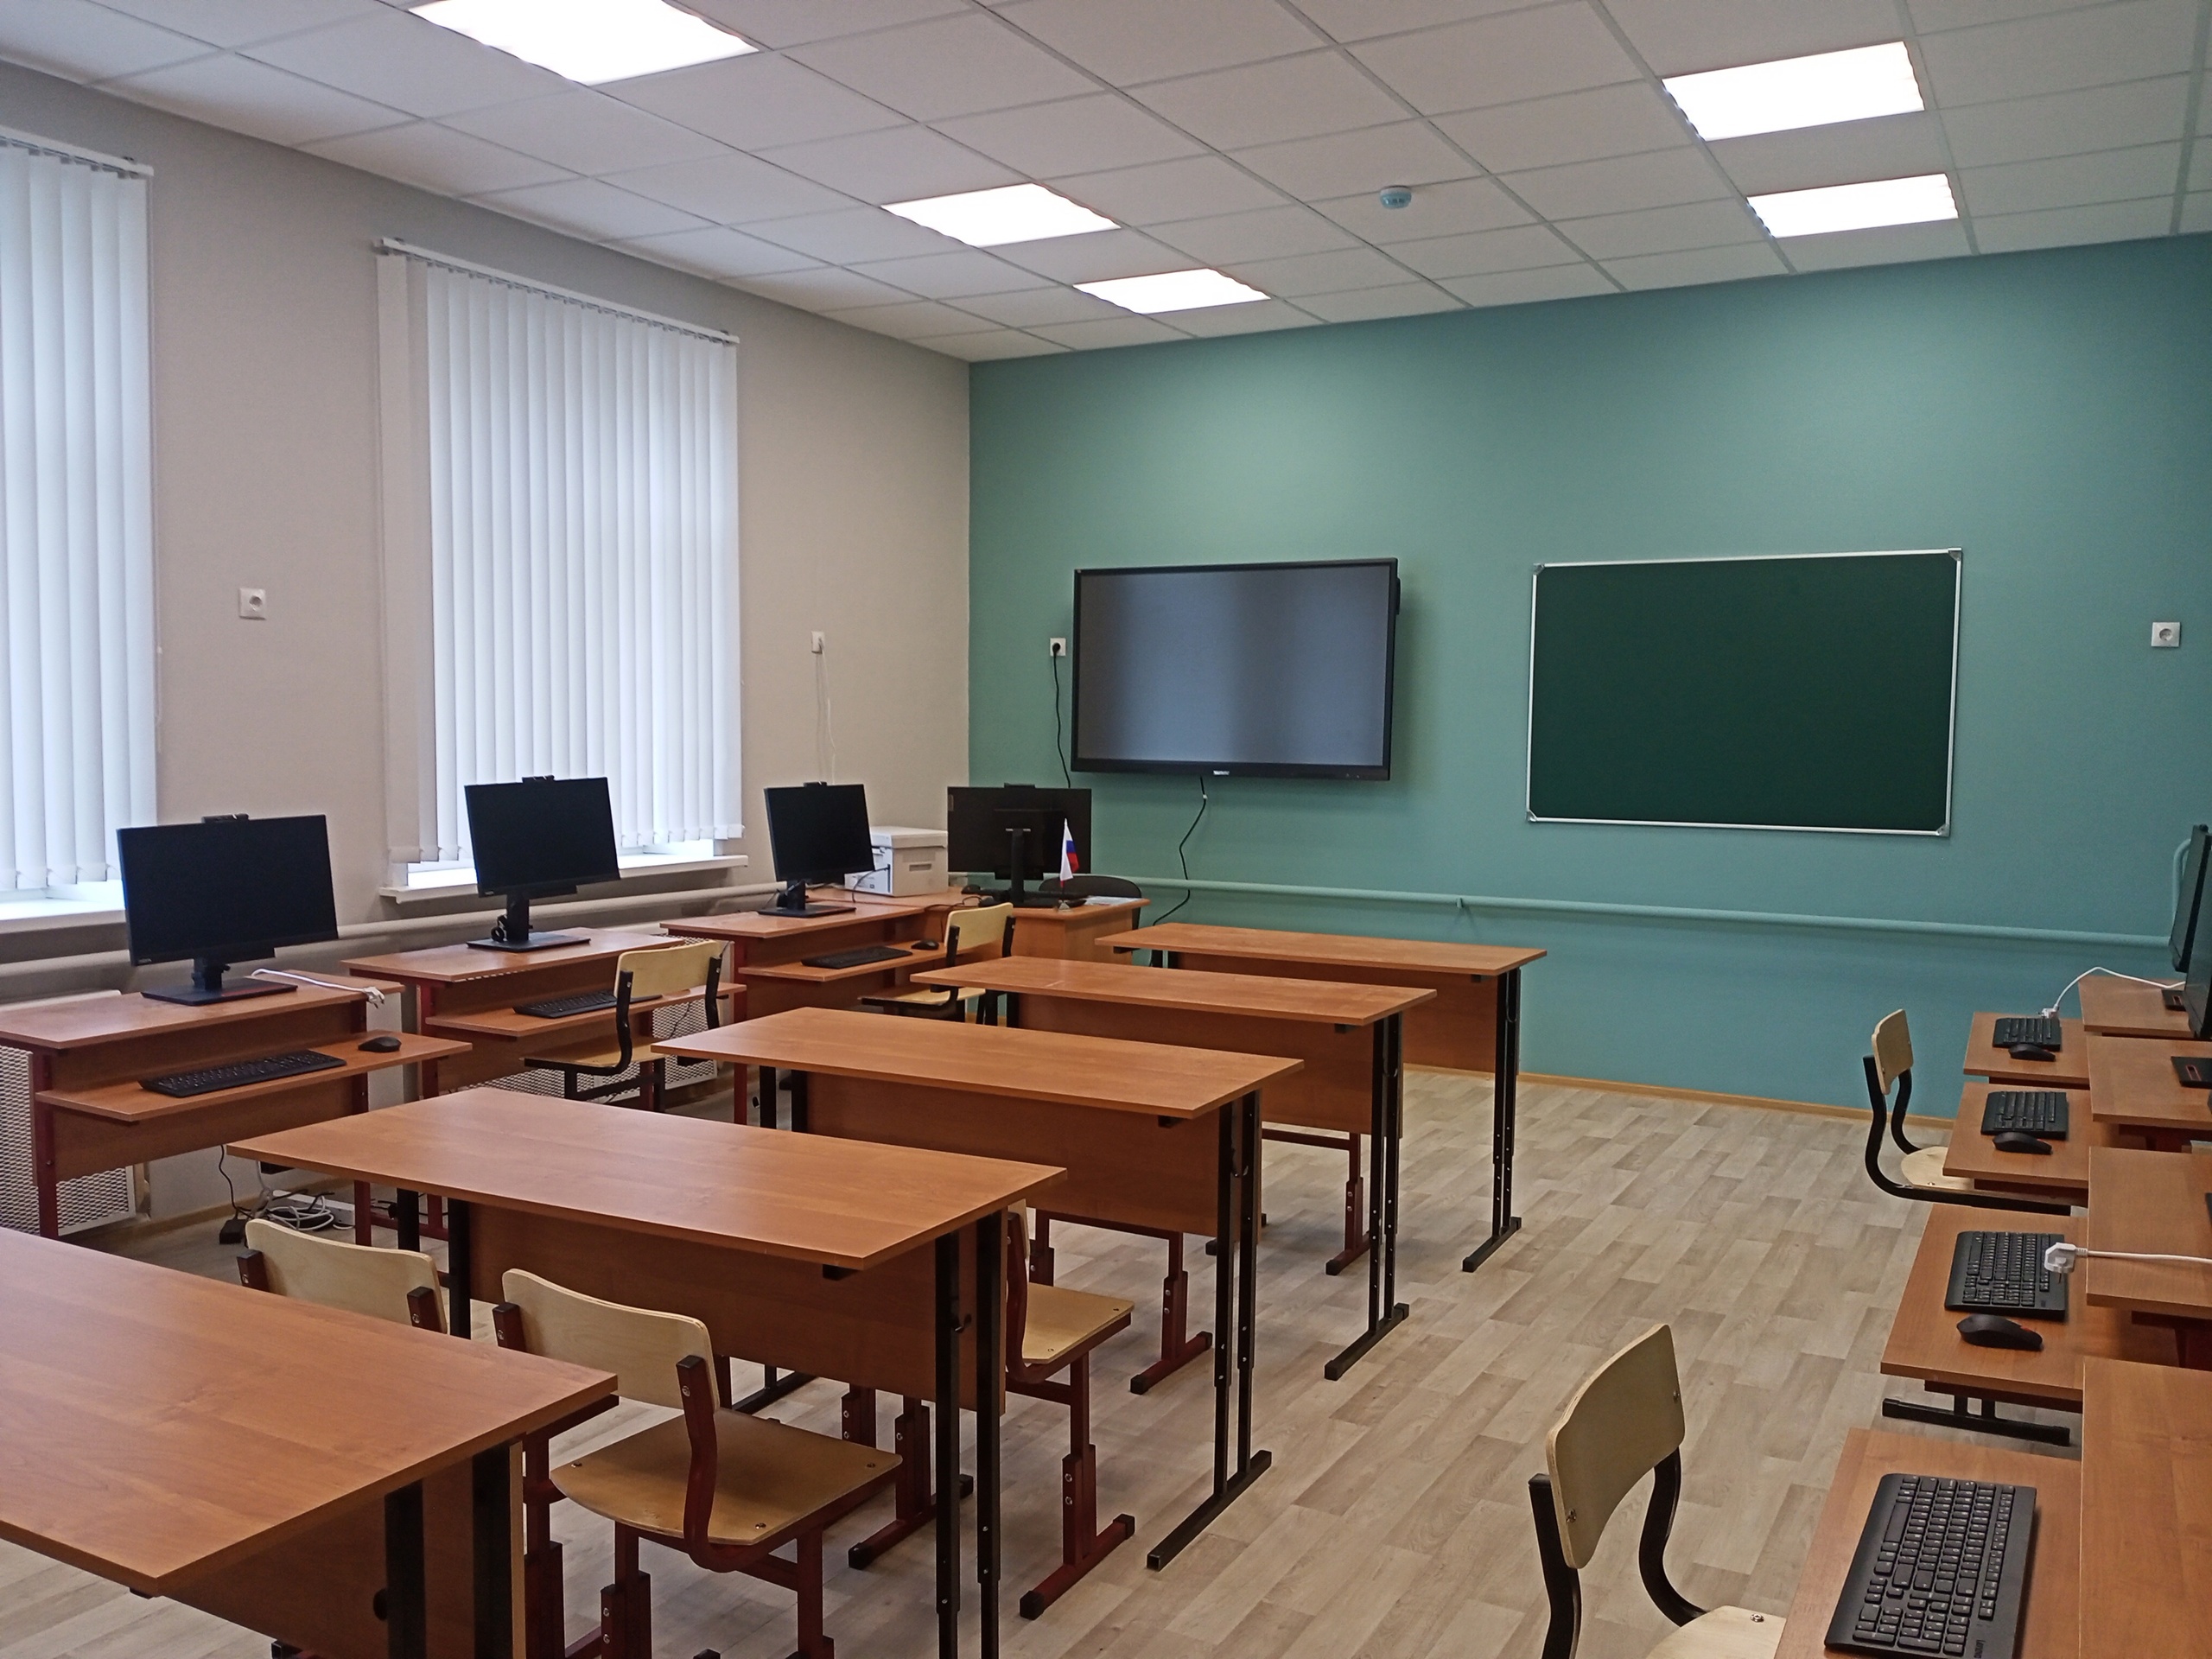 Многие школы Смоленской области встречают День знаний обновленными